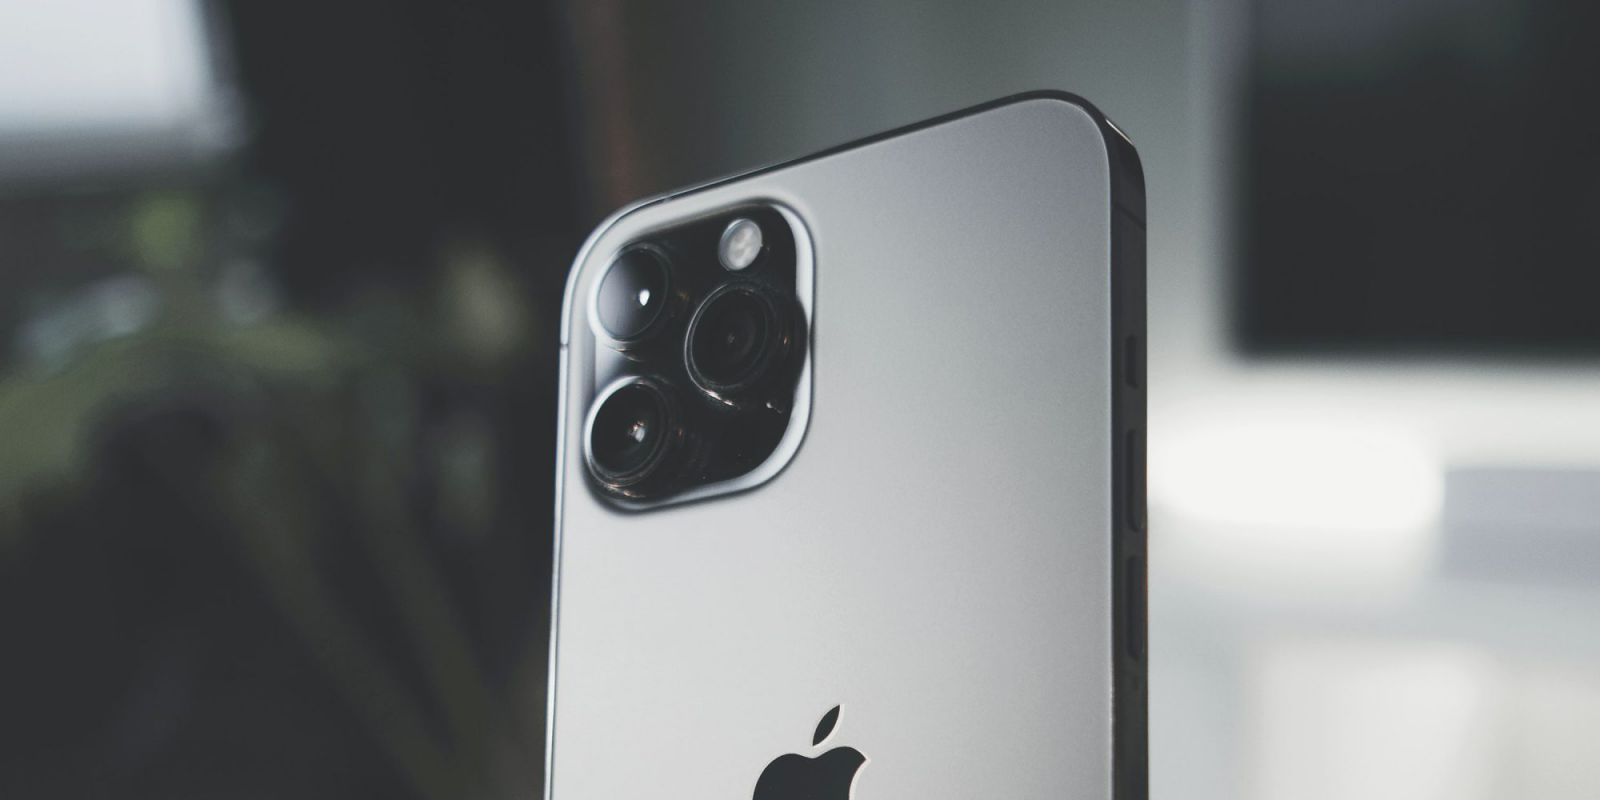 Một chiếc iPhone 13 mới luôn là lựa chọn hàng đầu của những người yêu công nghệ. Nó có màn hình hiển thị nổi bật, camera chất lượng cao và cấu hình mạnh mẽ, đảm bảo sẽ làm hài lòng những người dùng khó tính nhất.